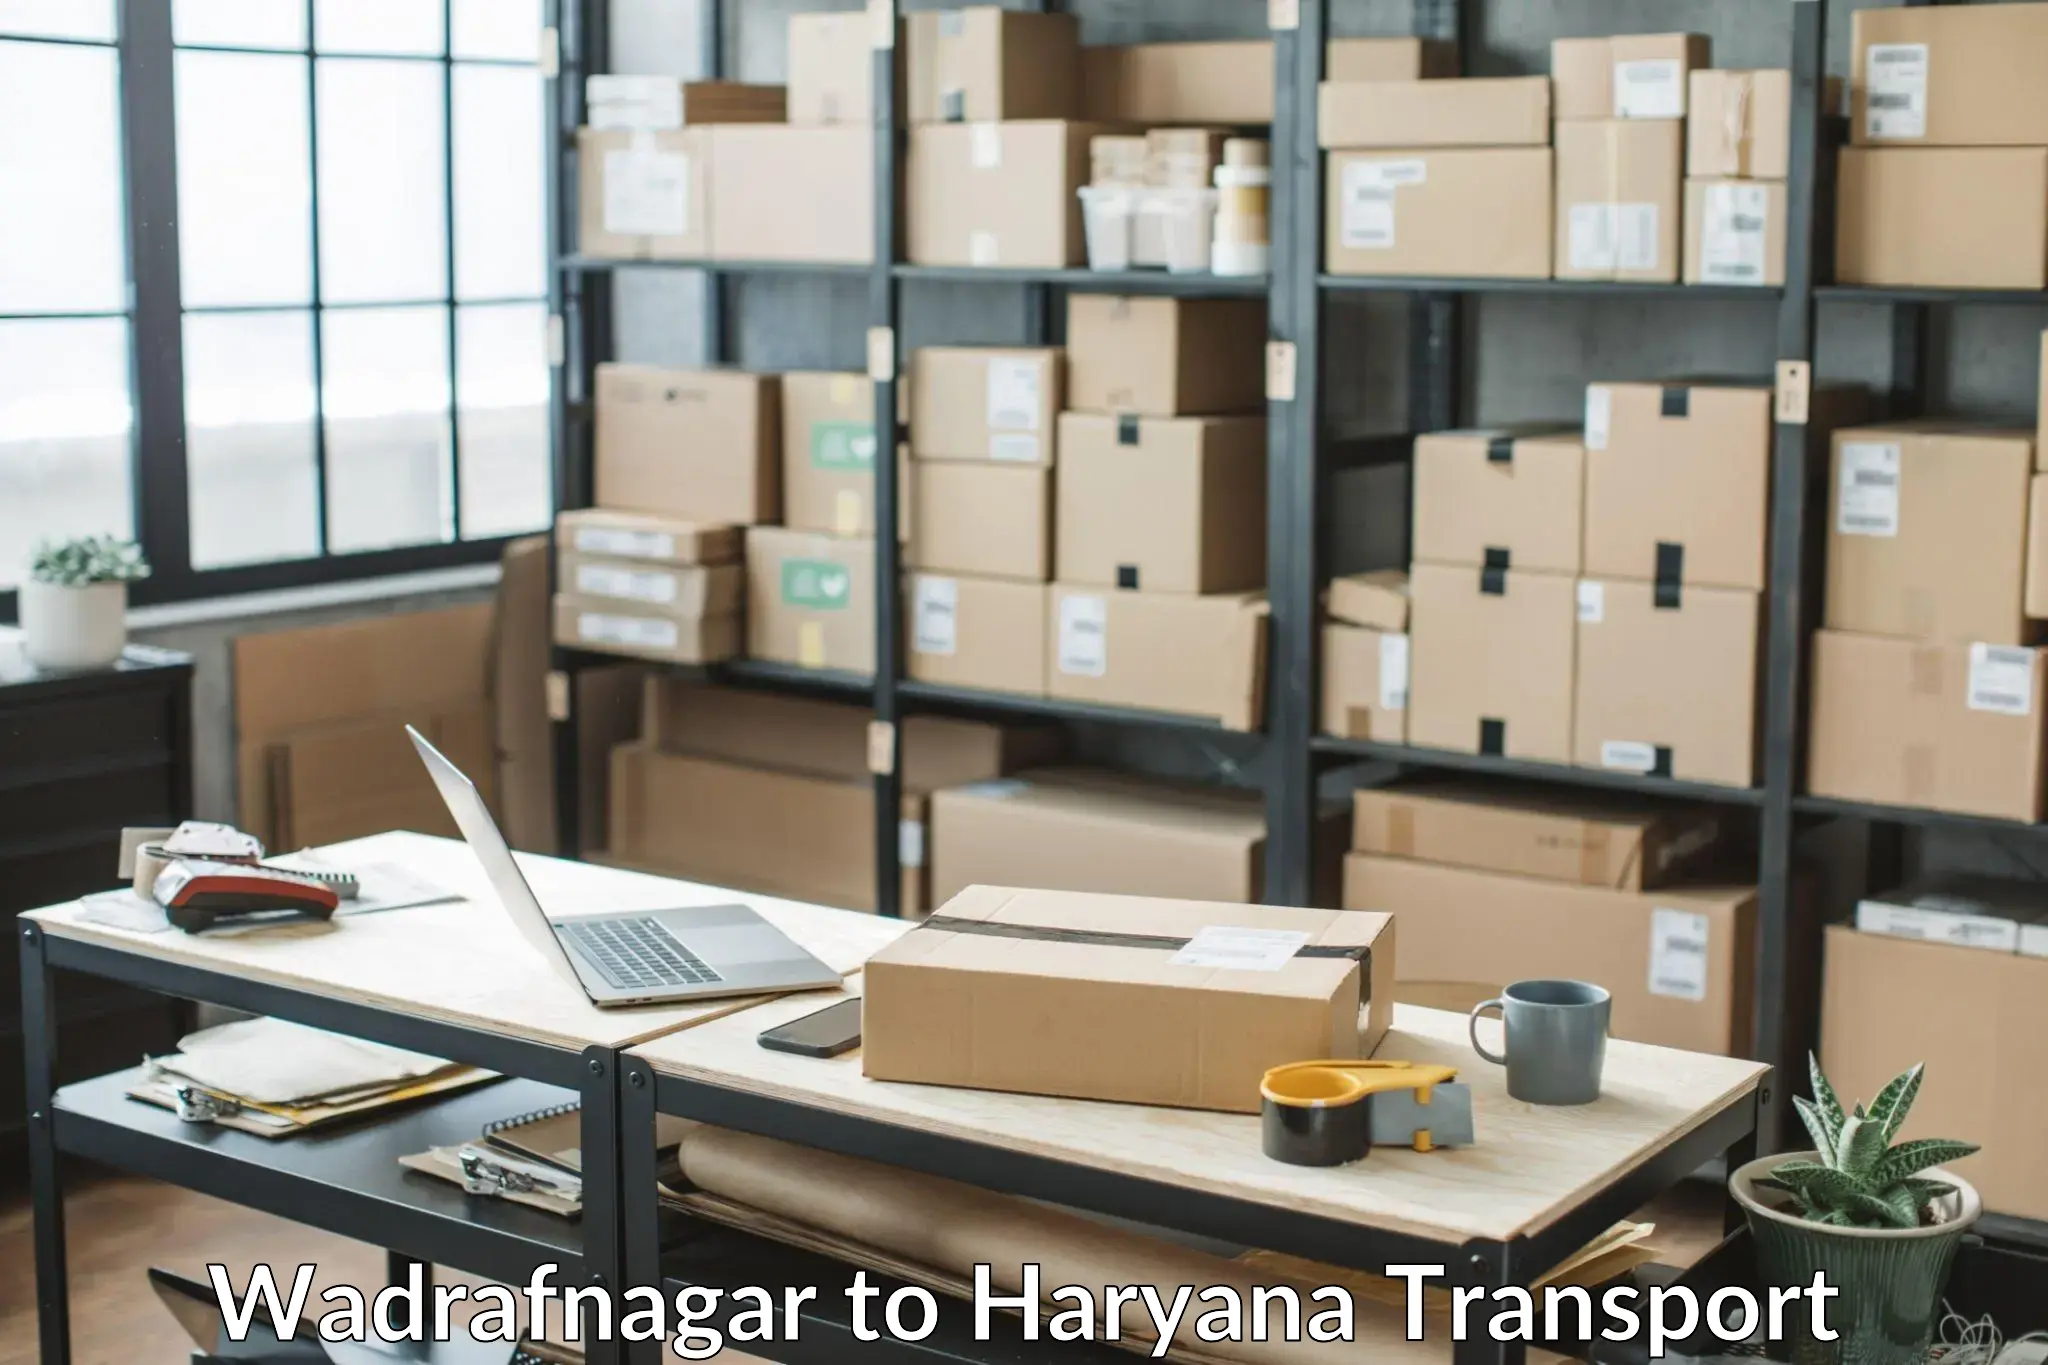 Goods delivery service Wadrafnagar to Chandi Rohtak